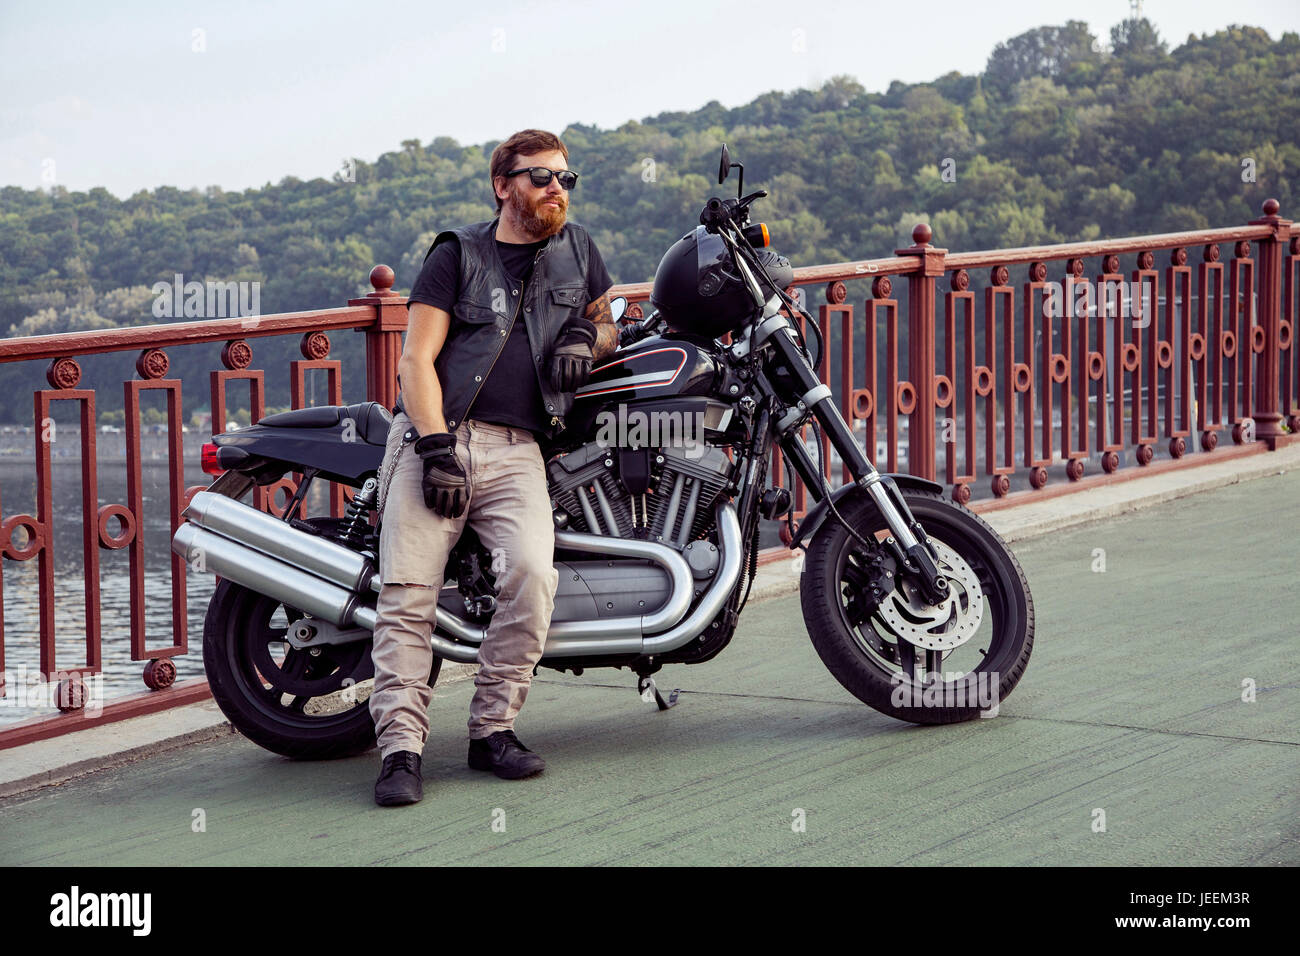 Bearded redhead biker with beard in leather jacket near bike. Stock Photo